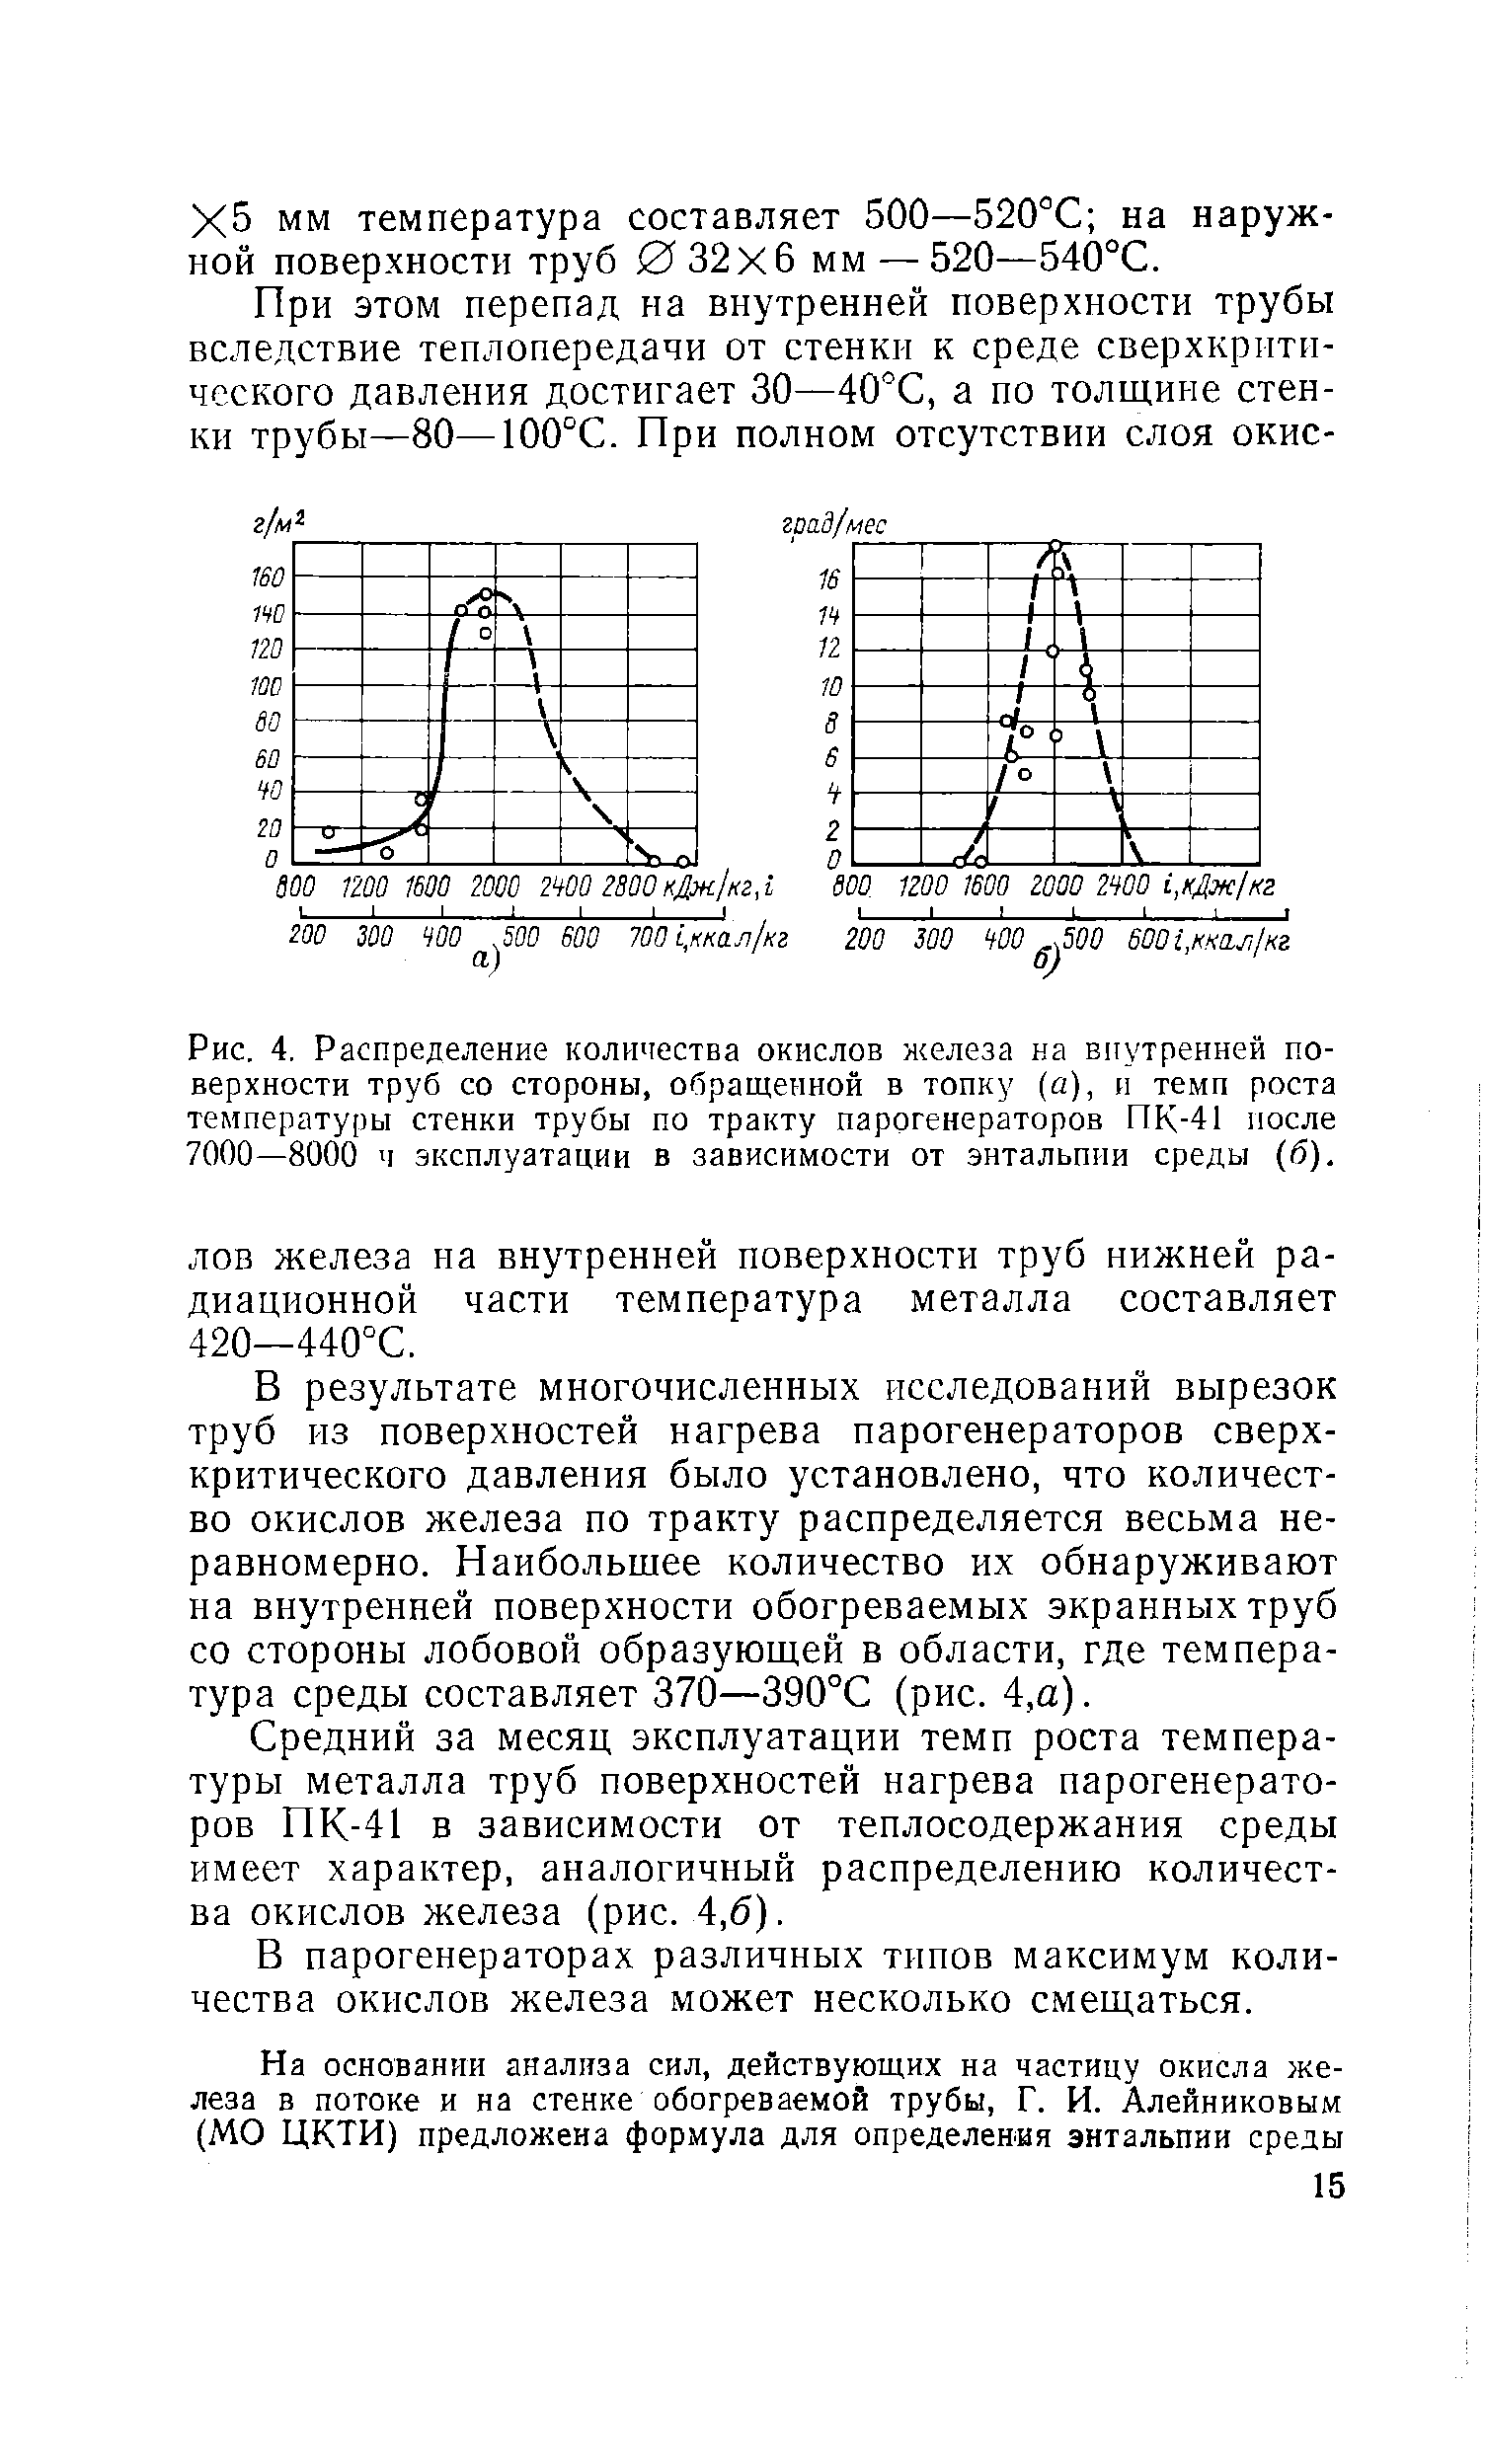 Рис. 4, Распределение количества окислов и<елеза на <a href="/info/1465">внутренней поверхности</a> труб со стороны, обращенной в топку (а), и темп роста <a href="/info/31078">температуры стенки трубы</a> по тракту парогенераторов ПК-41 после 7000—8000 ч эксплуатации в зависимости от энтальпии среды (б).
